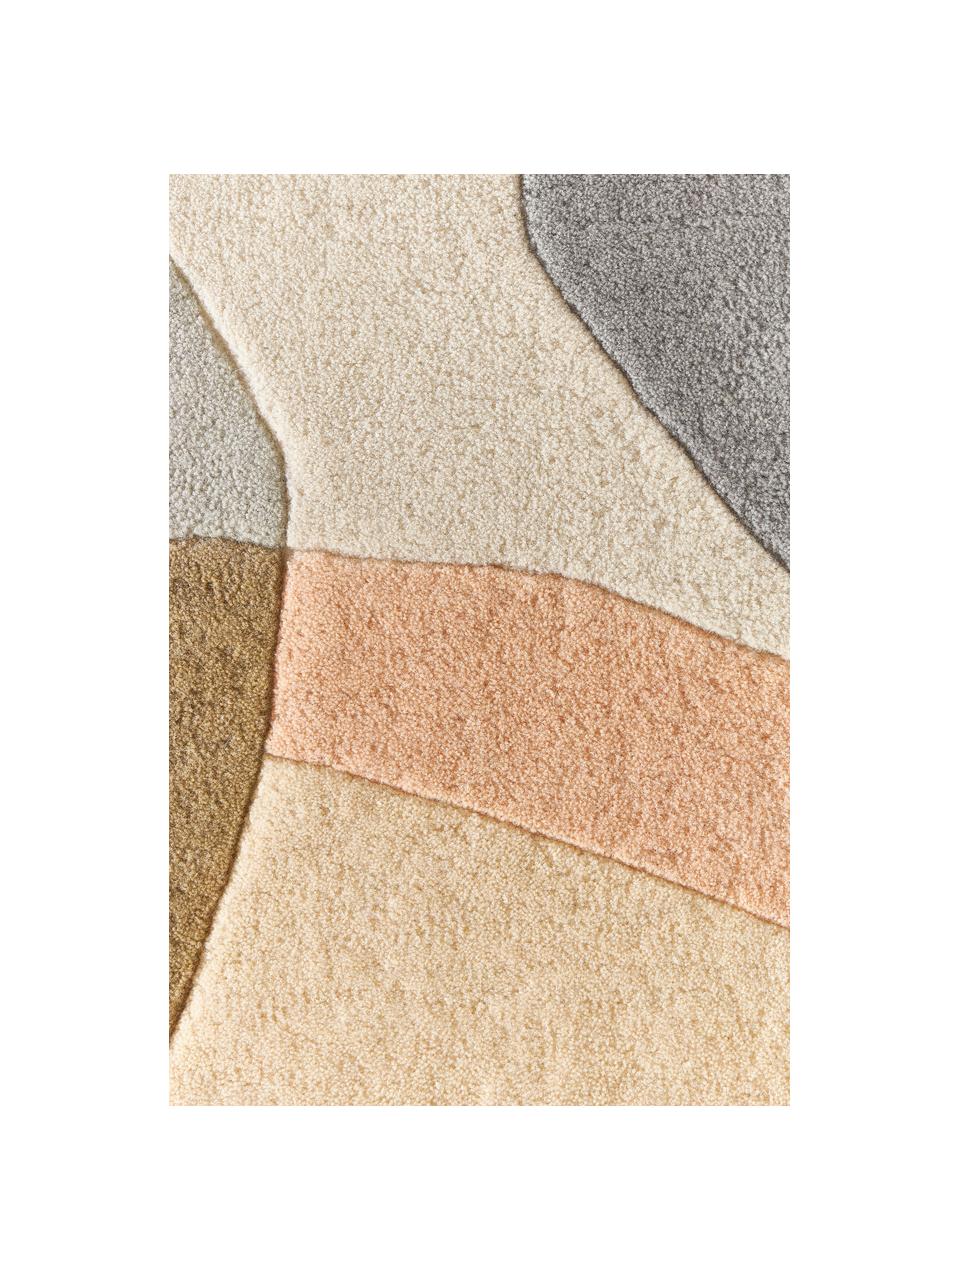 Handgetufteter Wollteppich Luke mit abstraktem Muster, Flor: 100 % Wolle, RWS-zertifiz, Beige- und Grautöne, B 200 x L 300 cm (Grösse L)